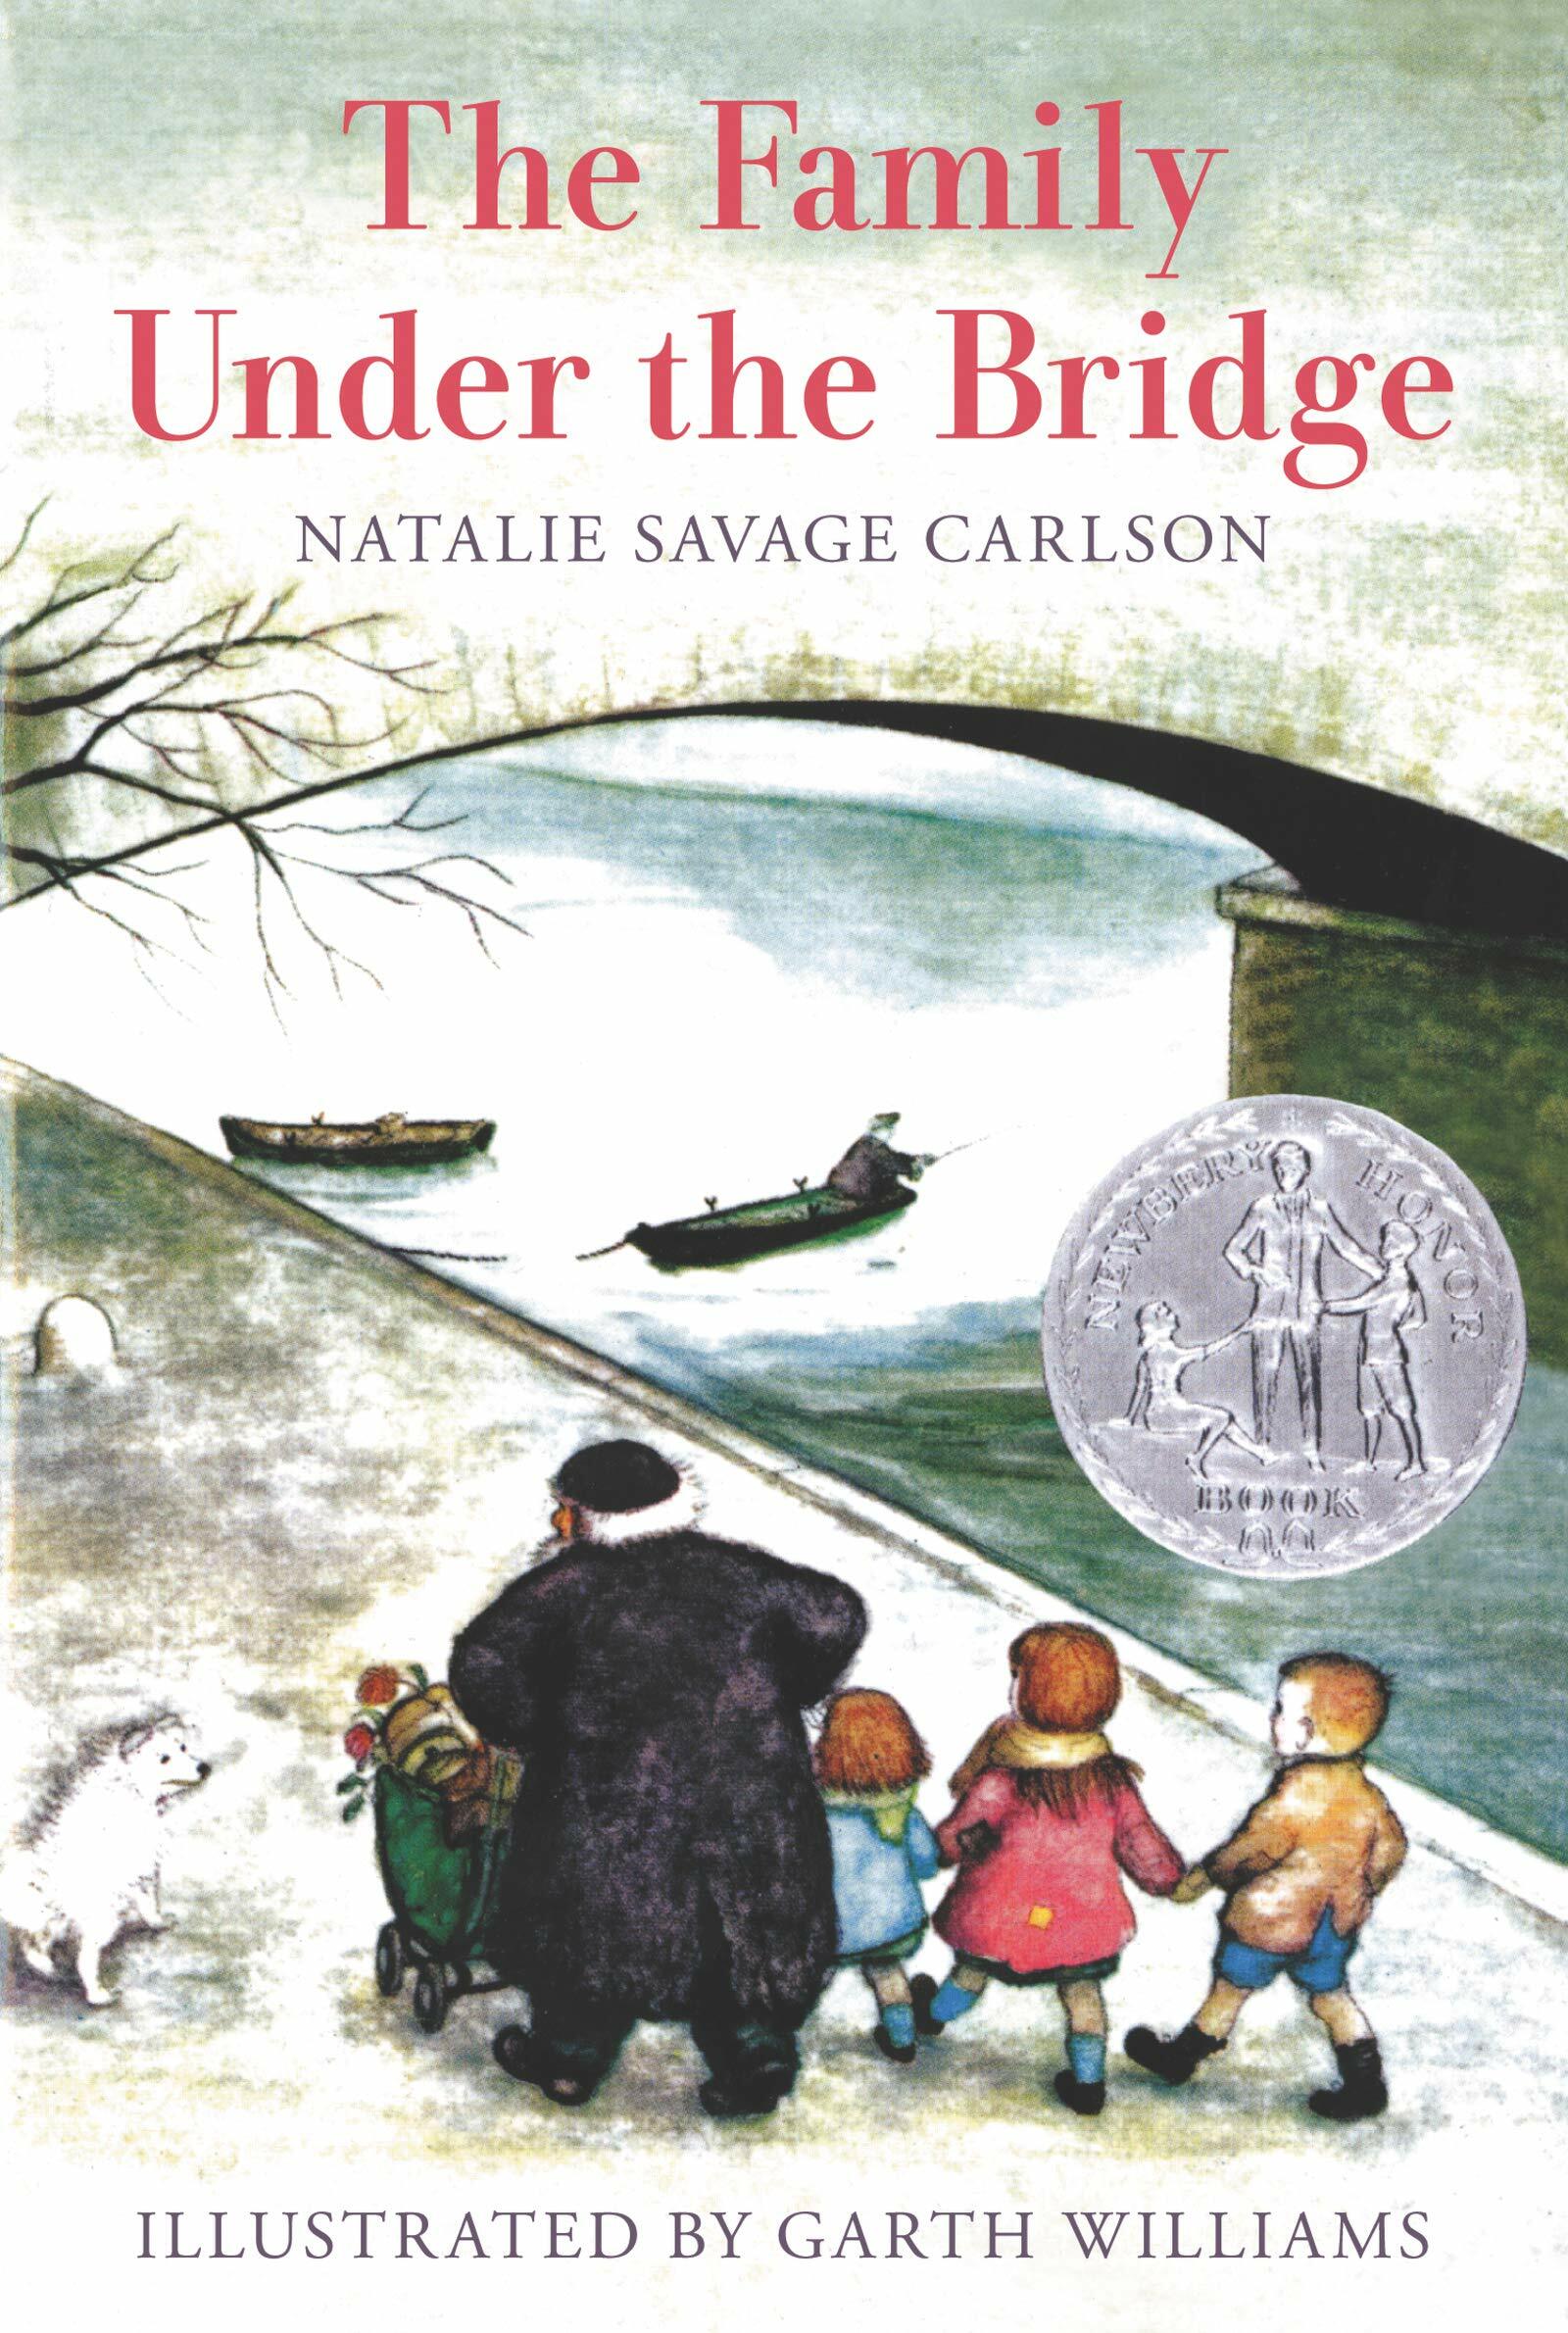 (The)Family under the bridge